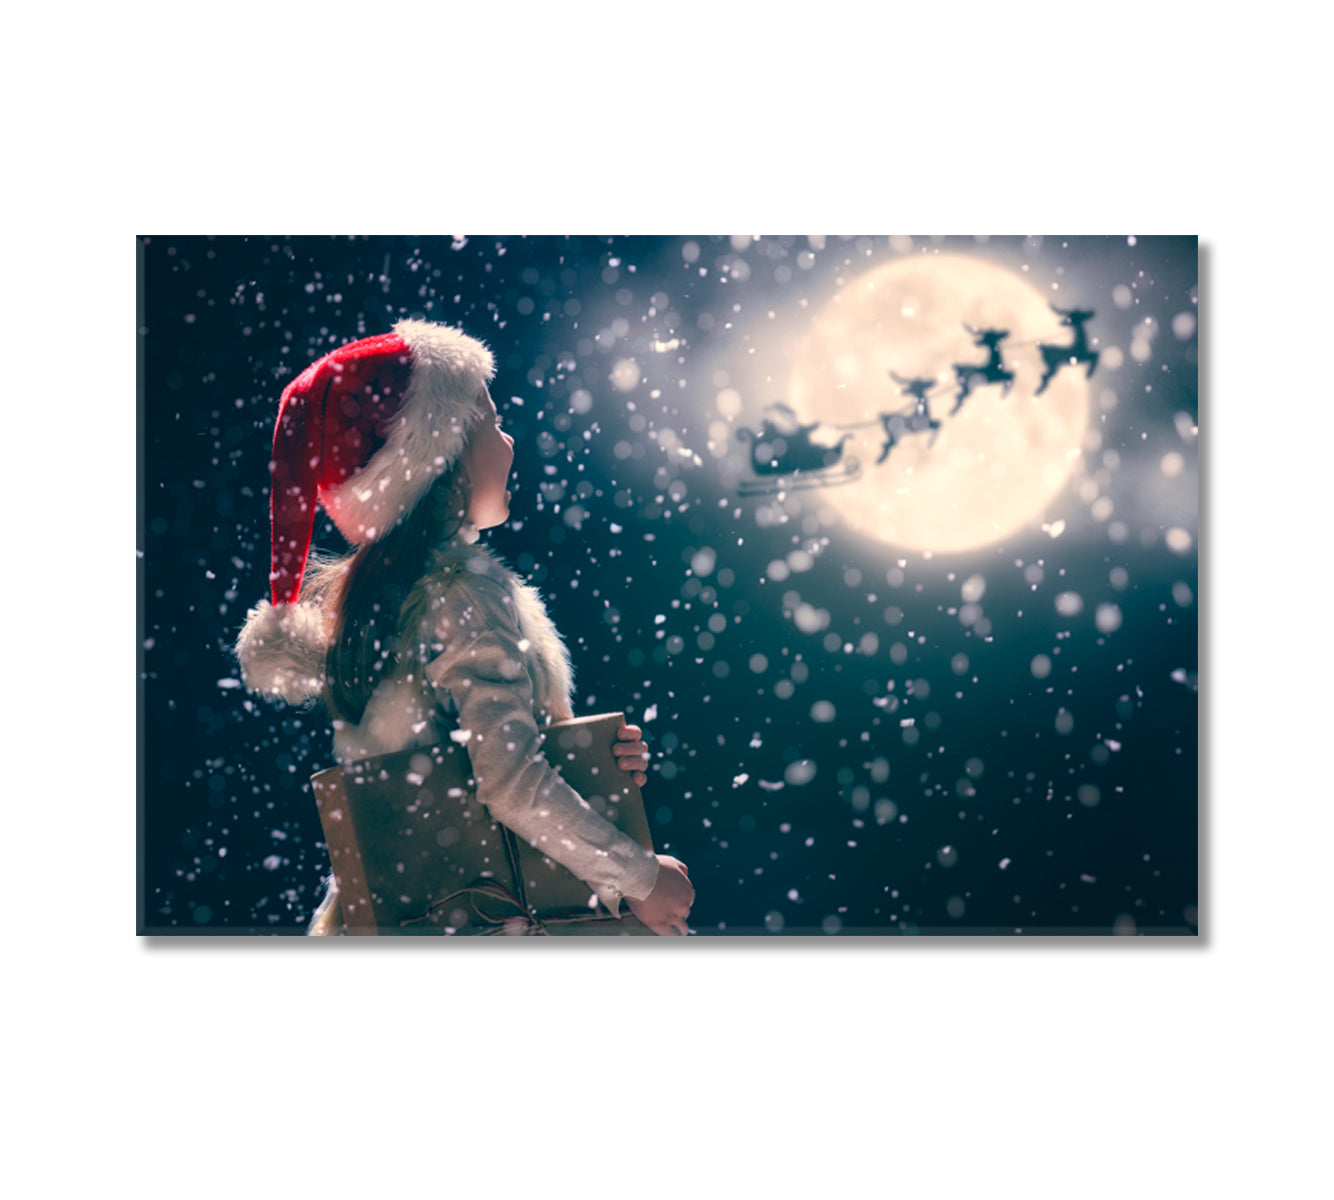 Santa Claus Flies in Sleigh Canvas Print-Canvas Print-CetArt-1 Panel-24x16 inches-CetArt